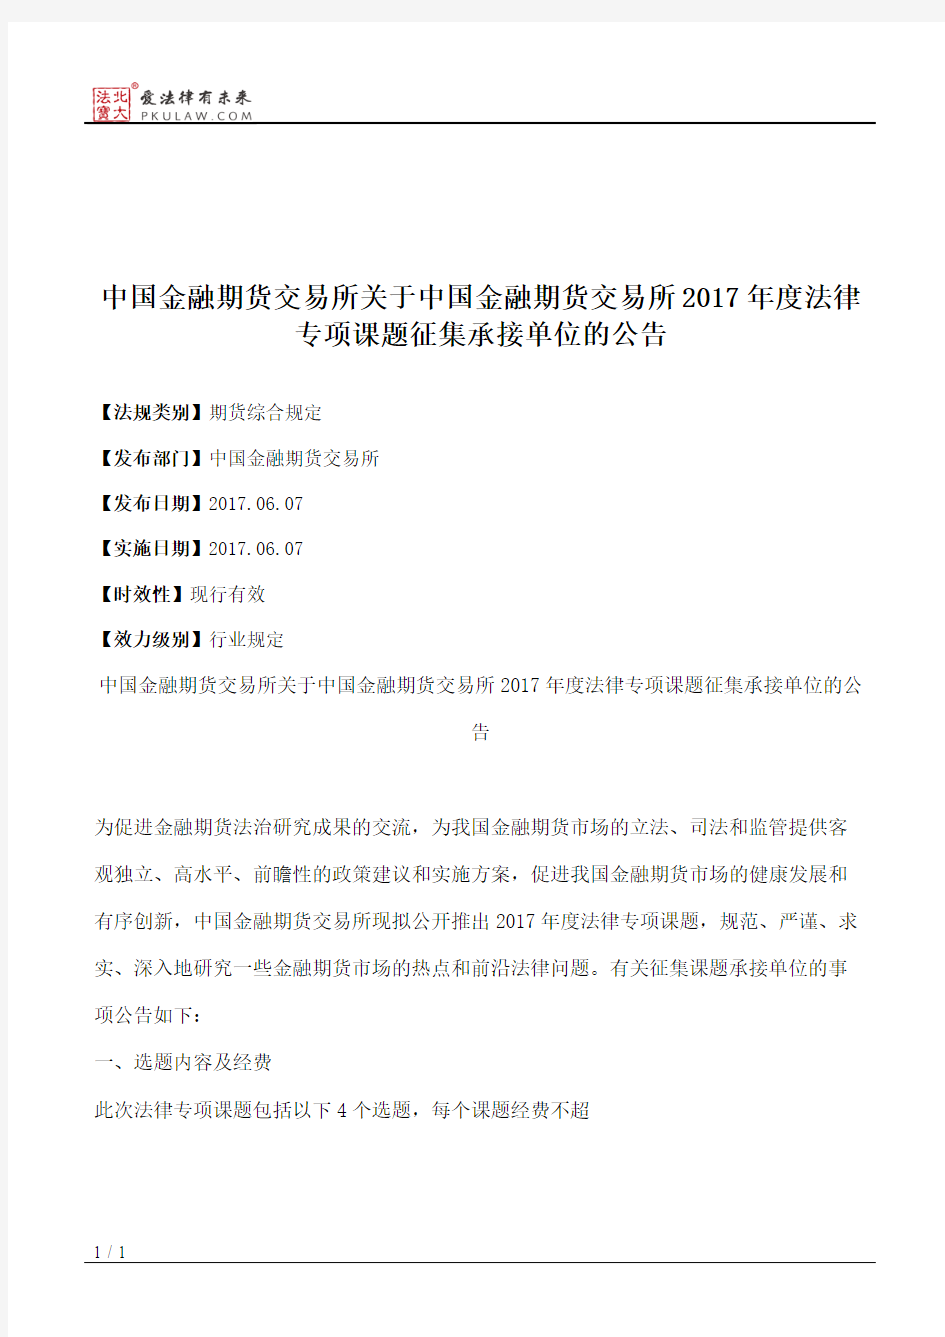 中国金融期货交易所关于中国金融期货交易所2017年度法律专项课题